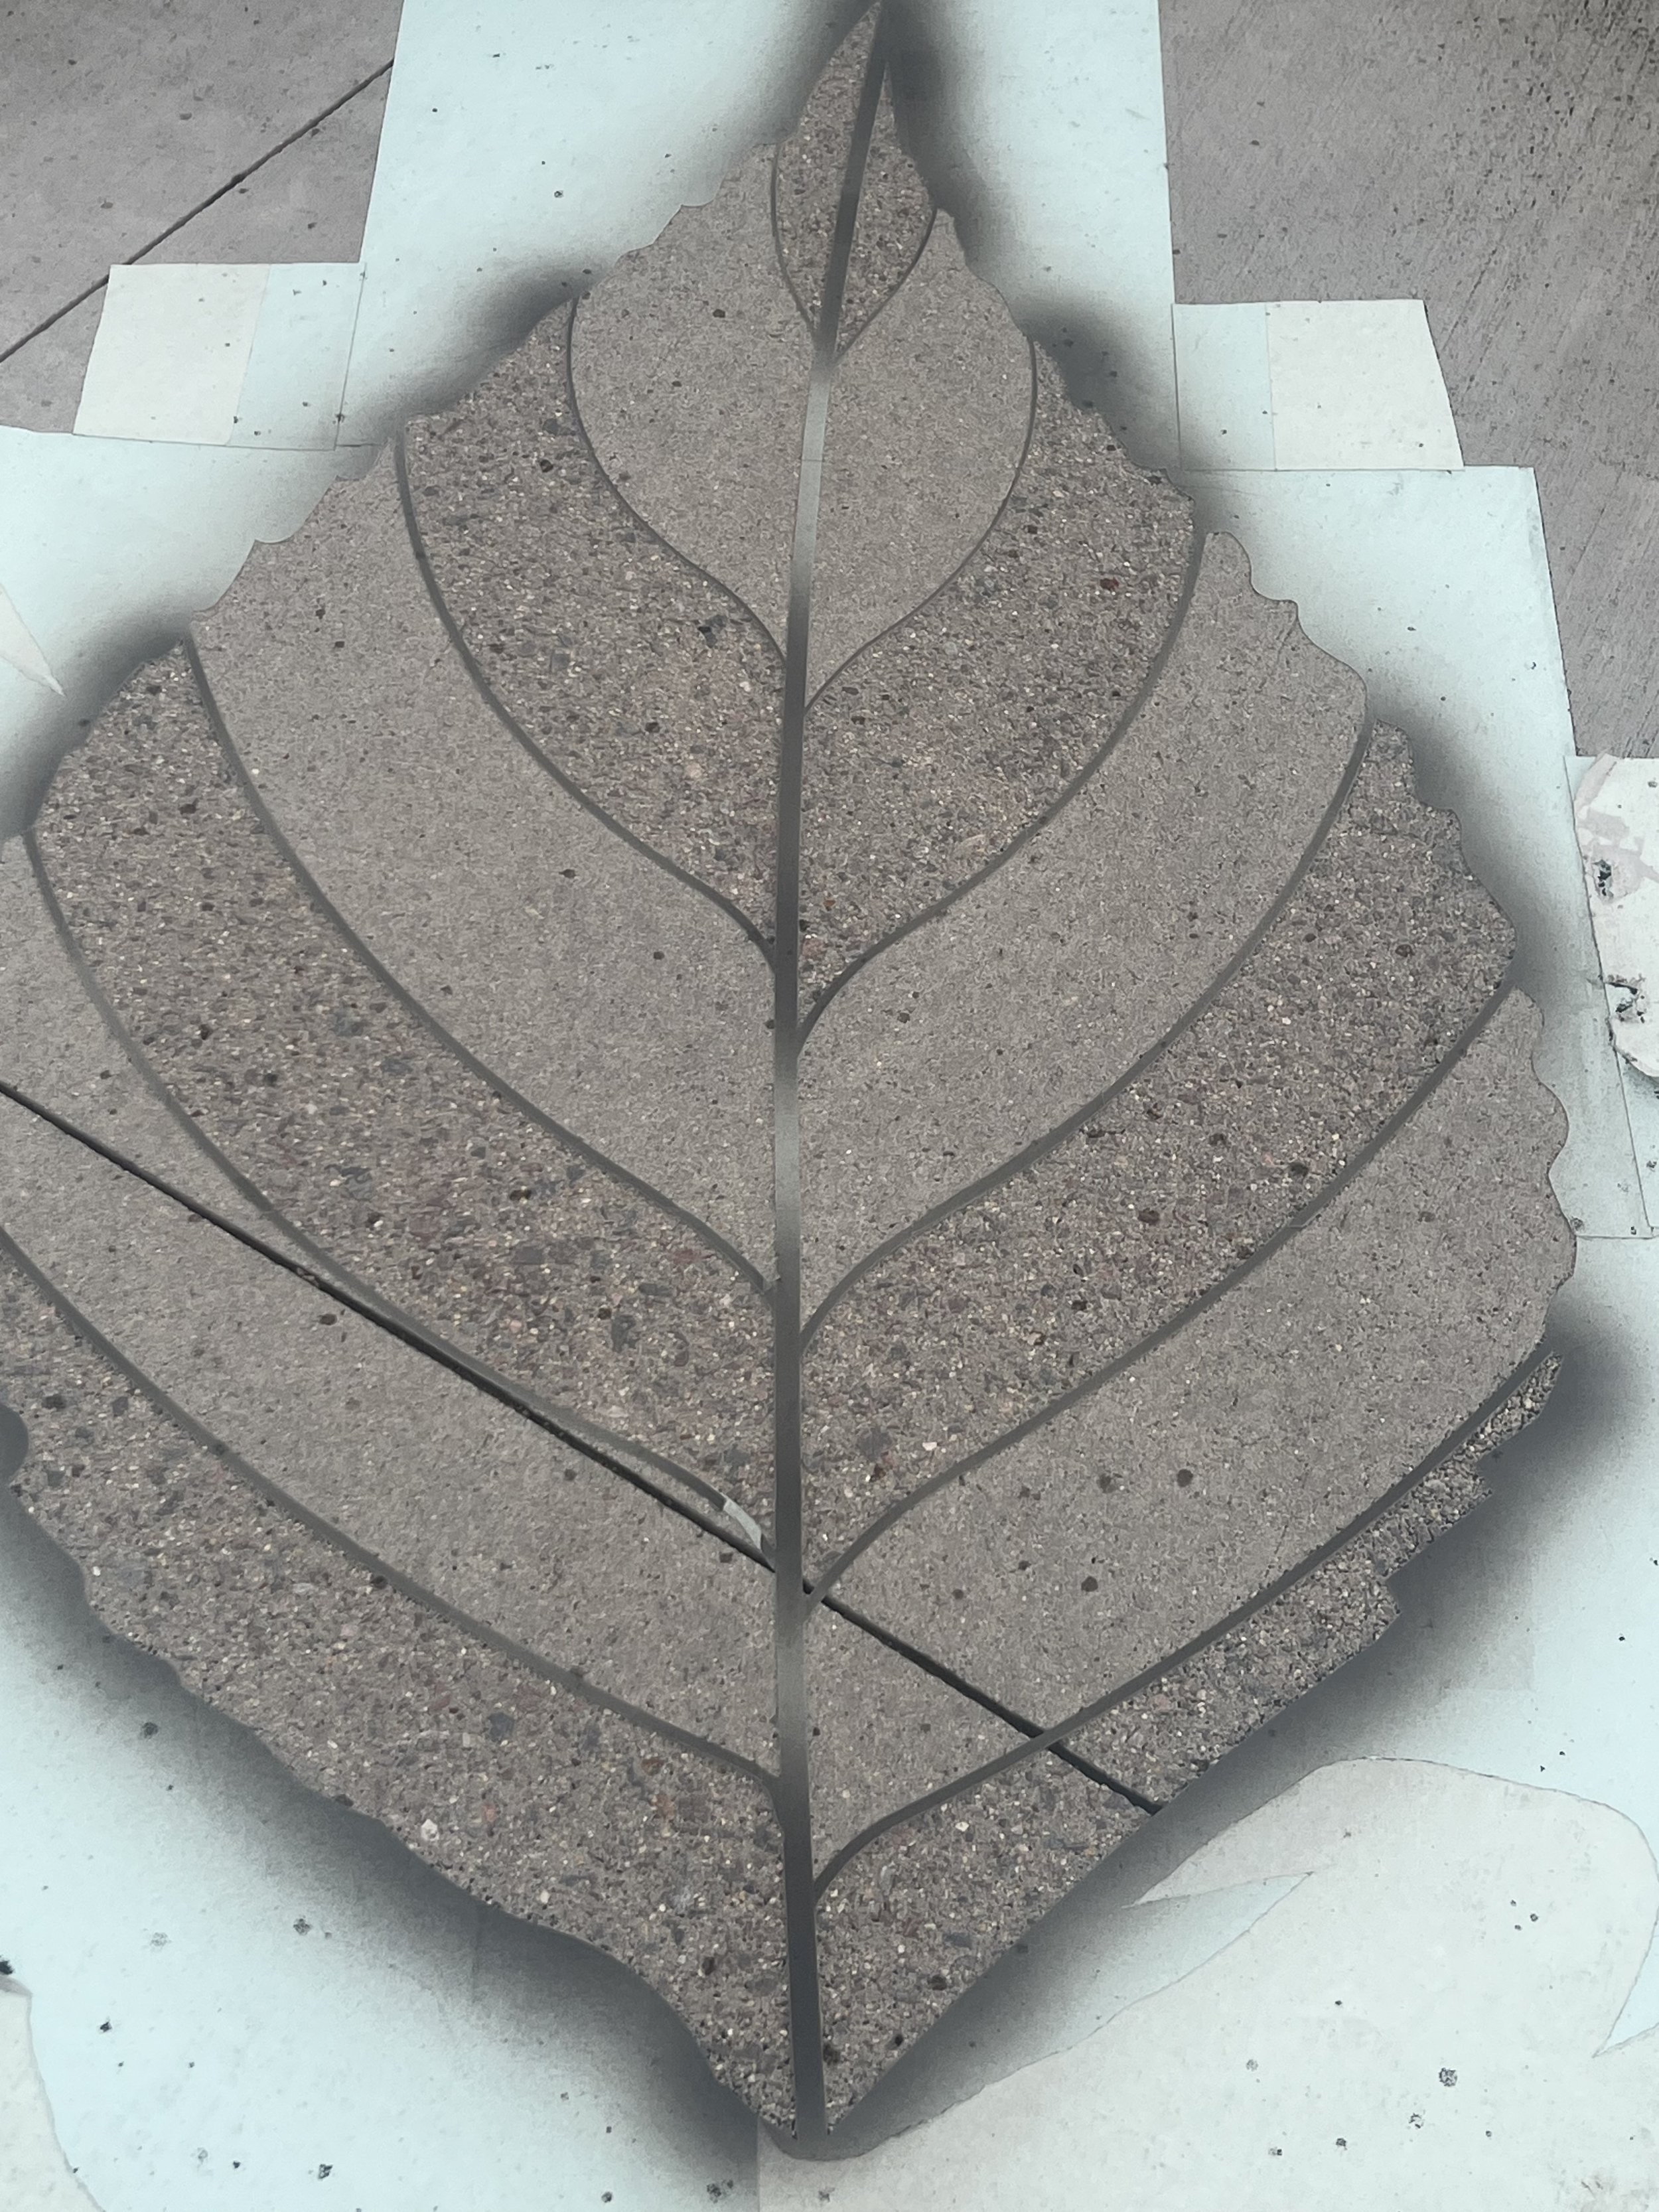 Sandblasted leaf